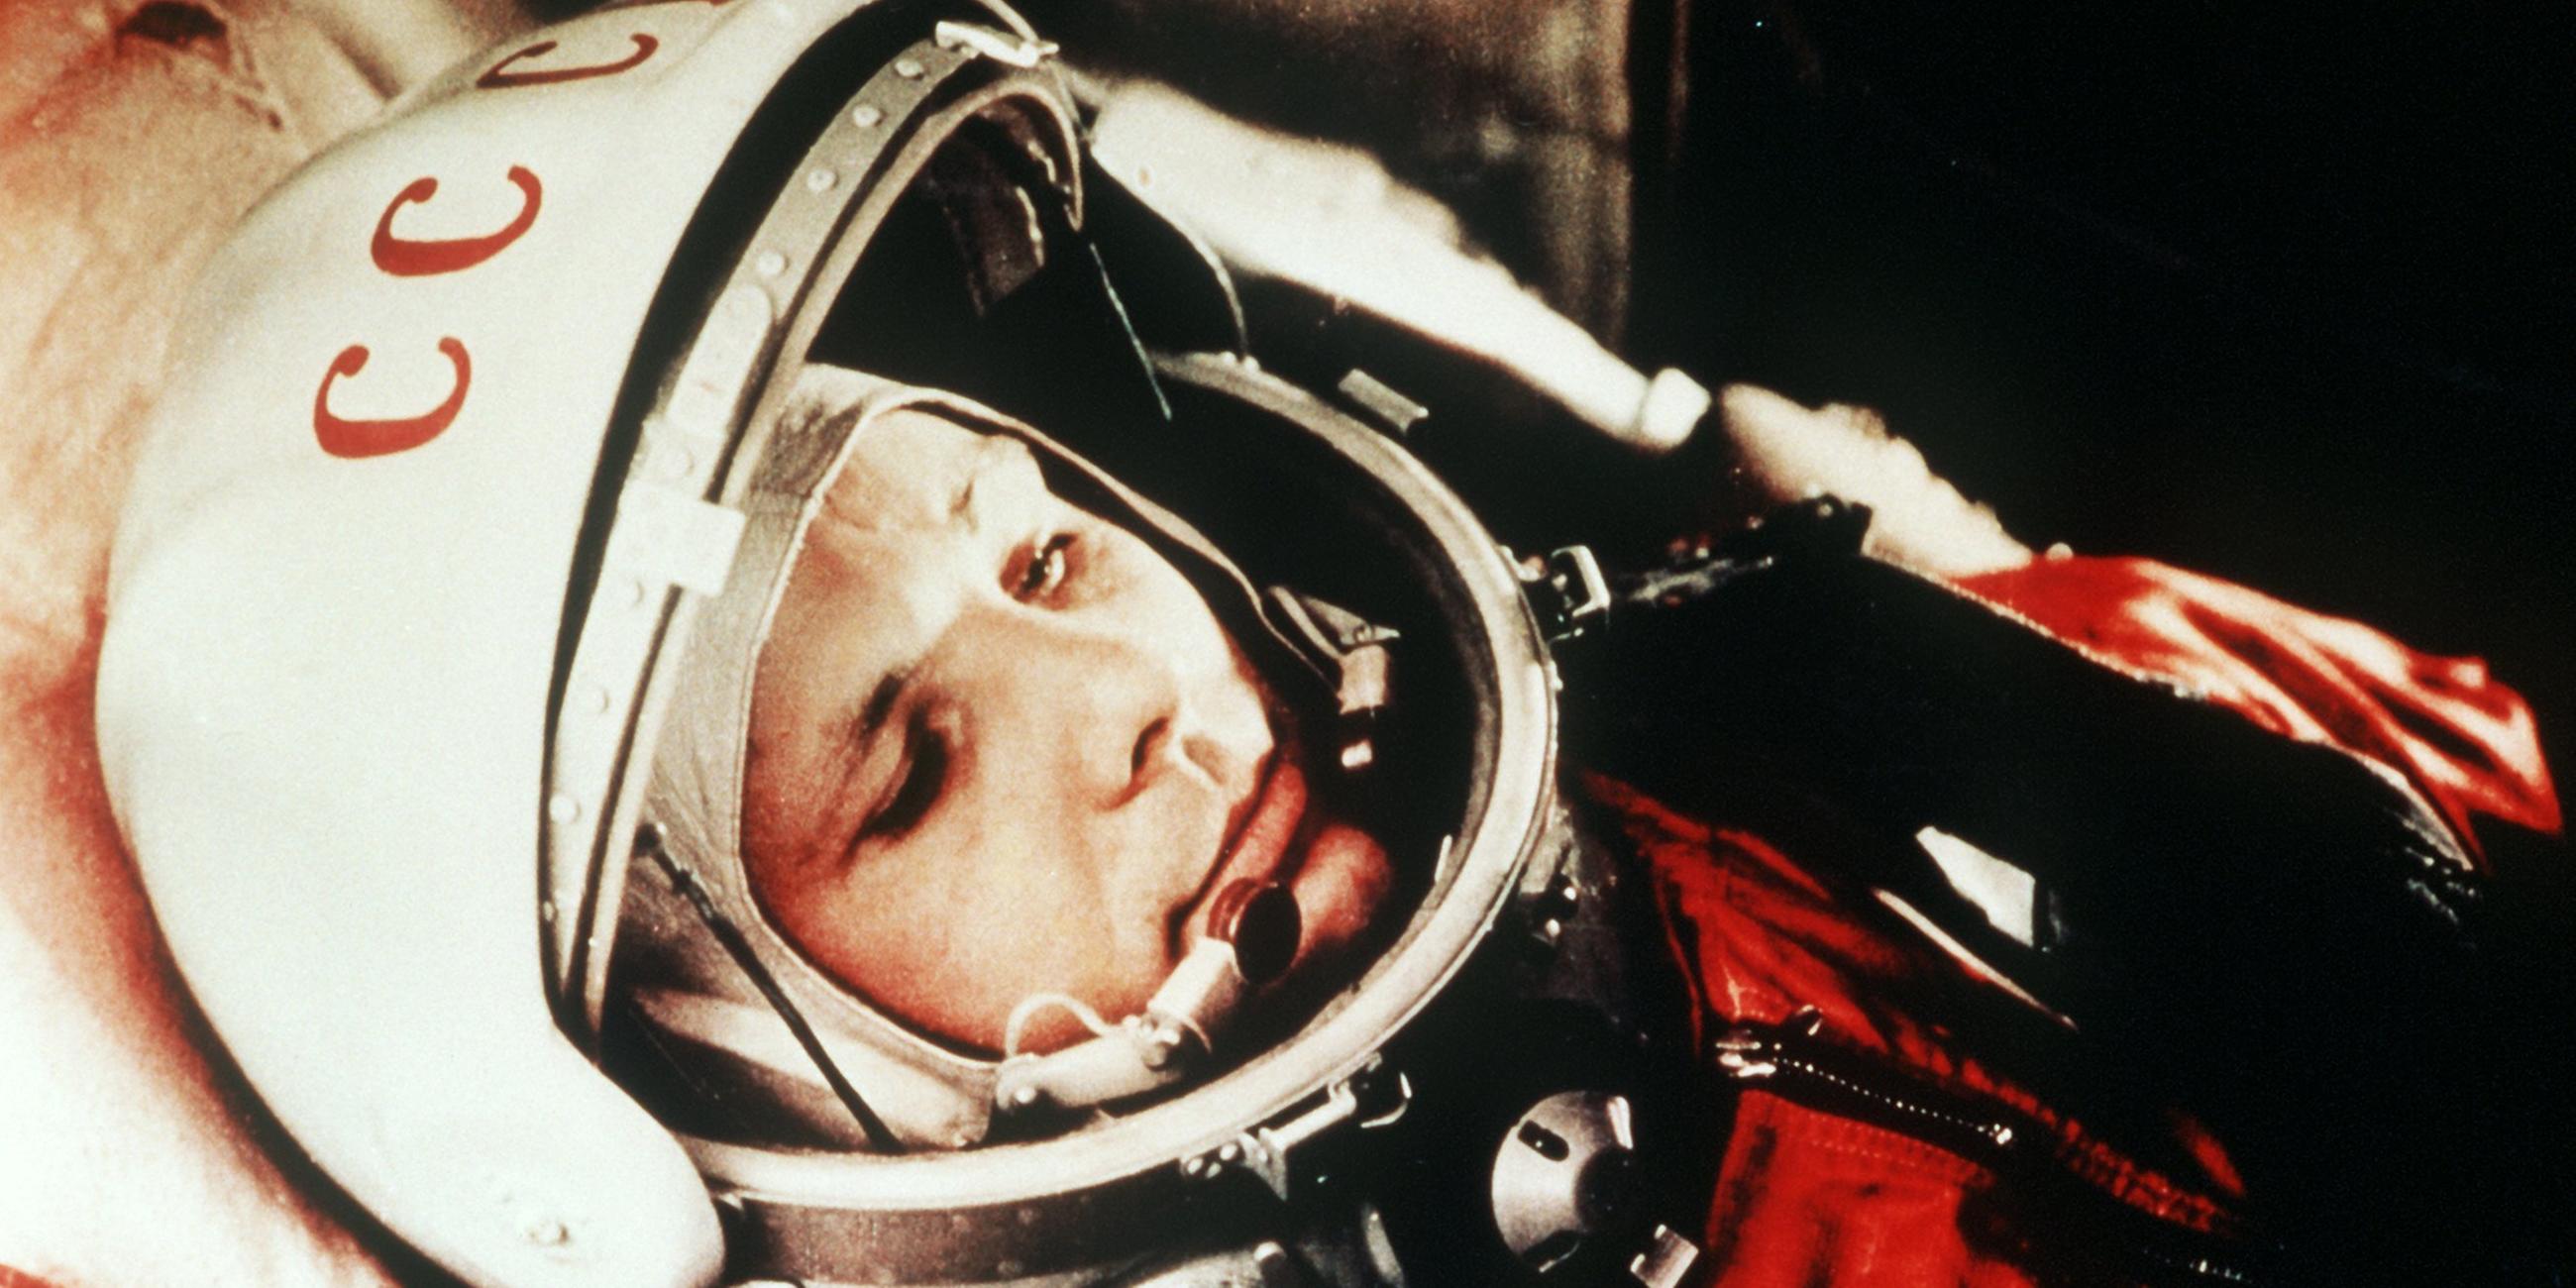 Russischer Kosmonaut Juri Gagarin in seinem Raumanzug kurz vor dem Start ins Weltall 